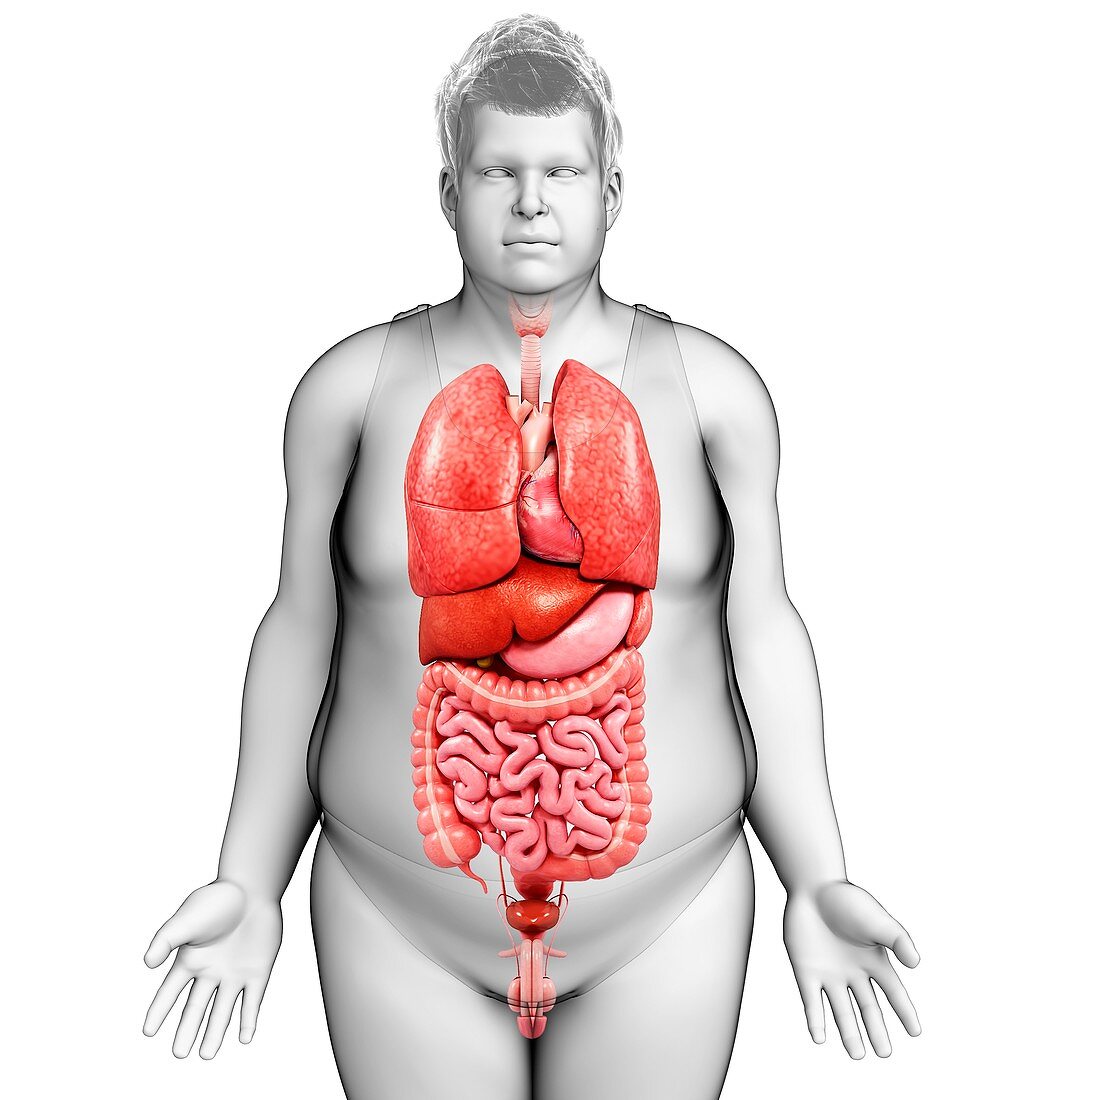 Human internal organs,illustration